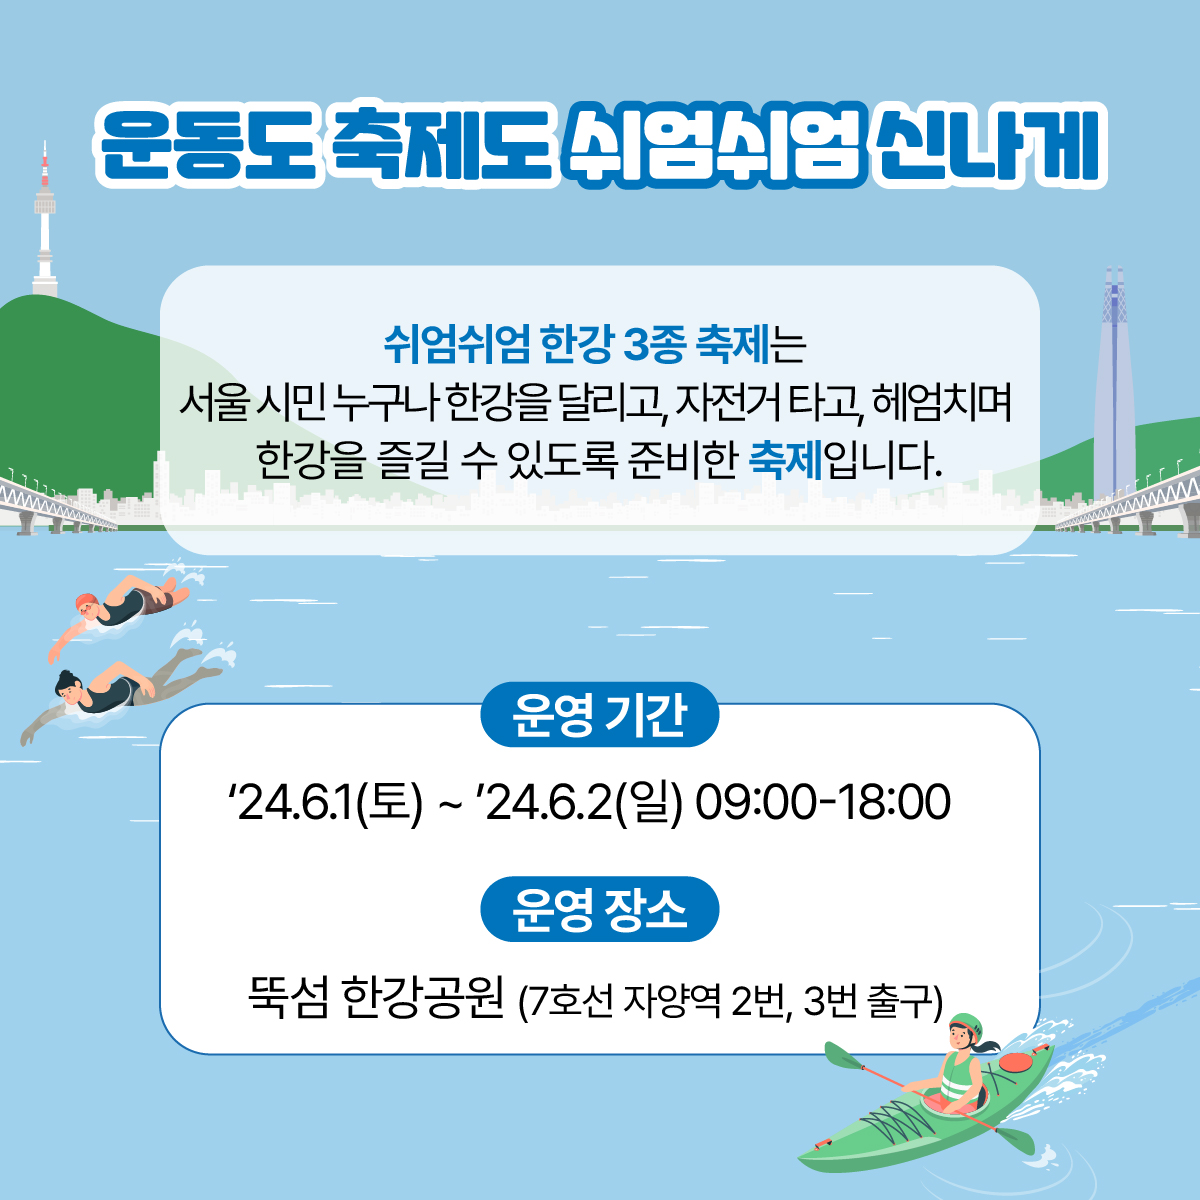 쉬엄쉬엄 한강 3종 축제는 서울 시민 누구나 
한강에서 달리고, 자전거타고, 헤엄치며 
한강을 즐길 수 있도록 준비한 종합선물세트같은 축제랍니다!
